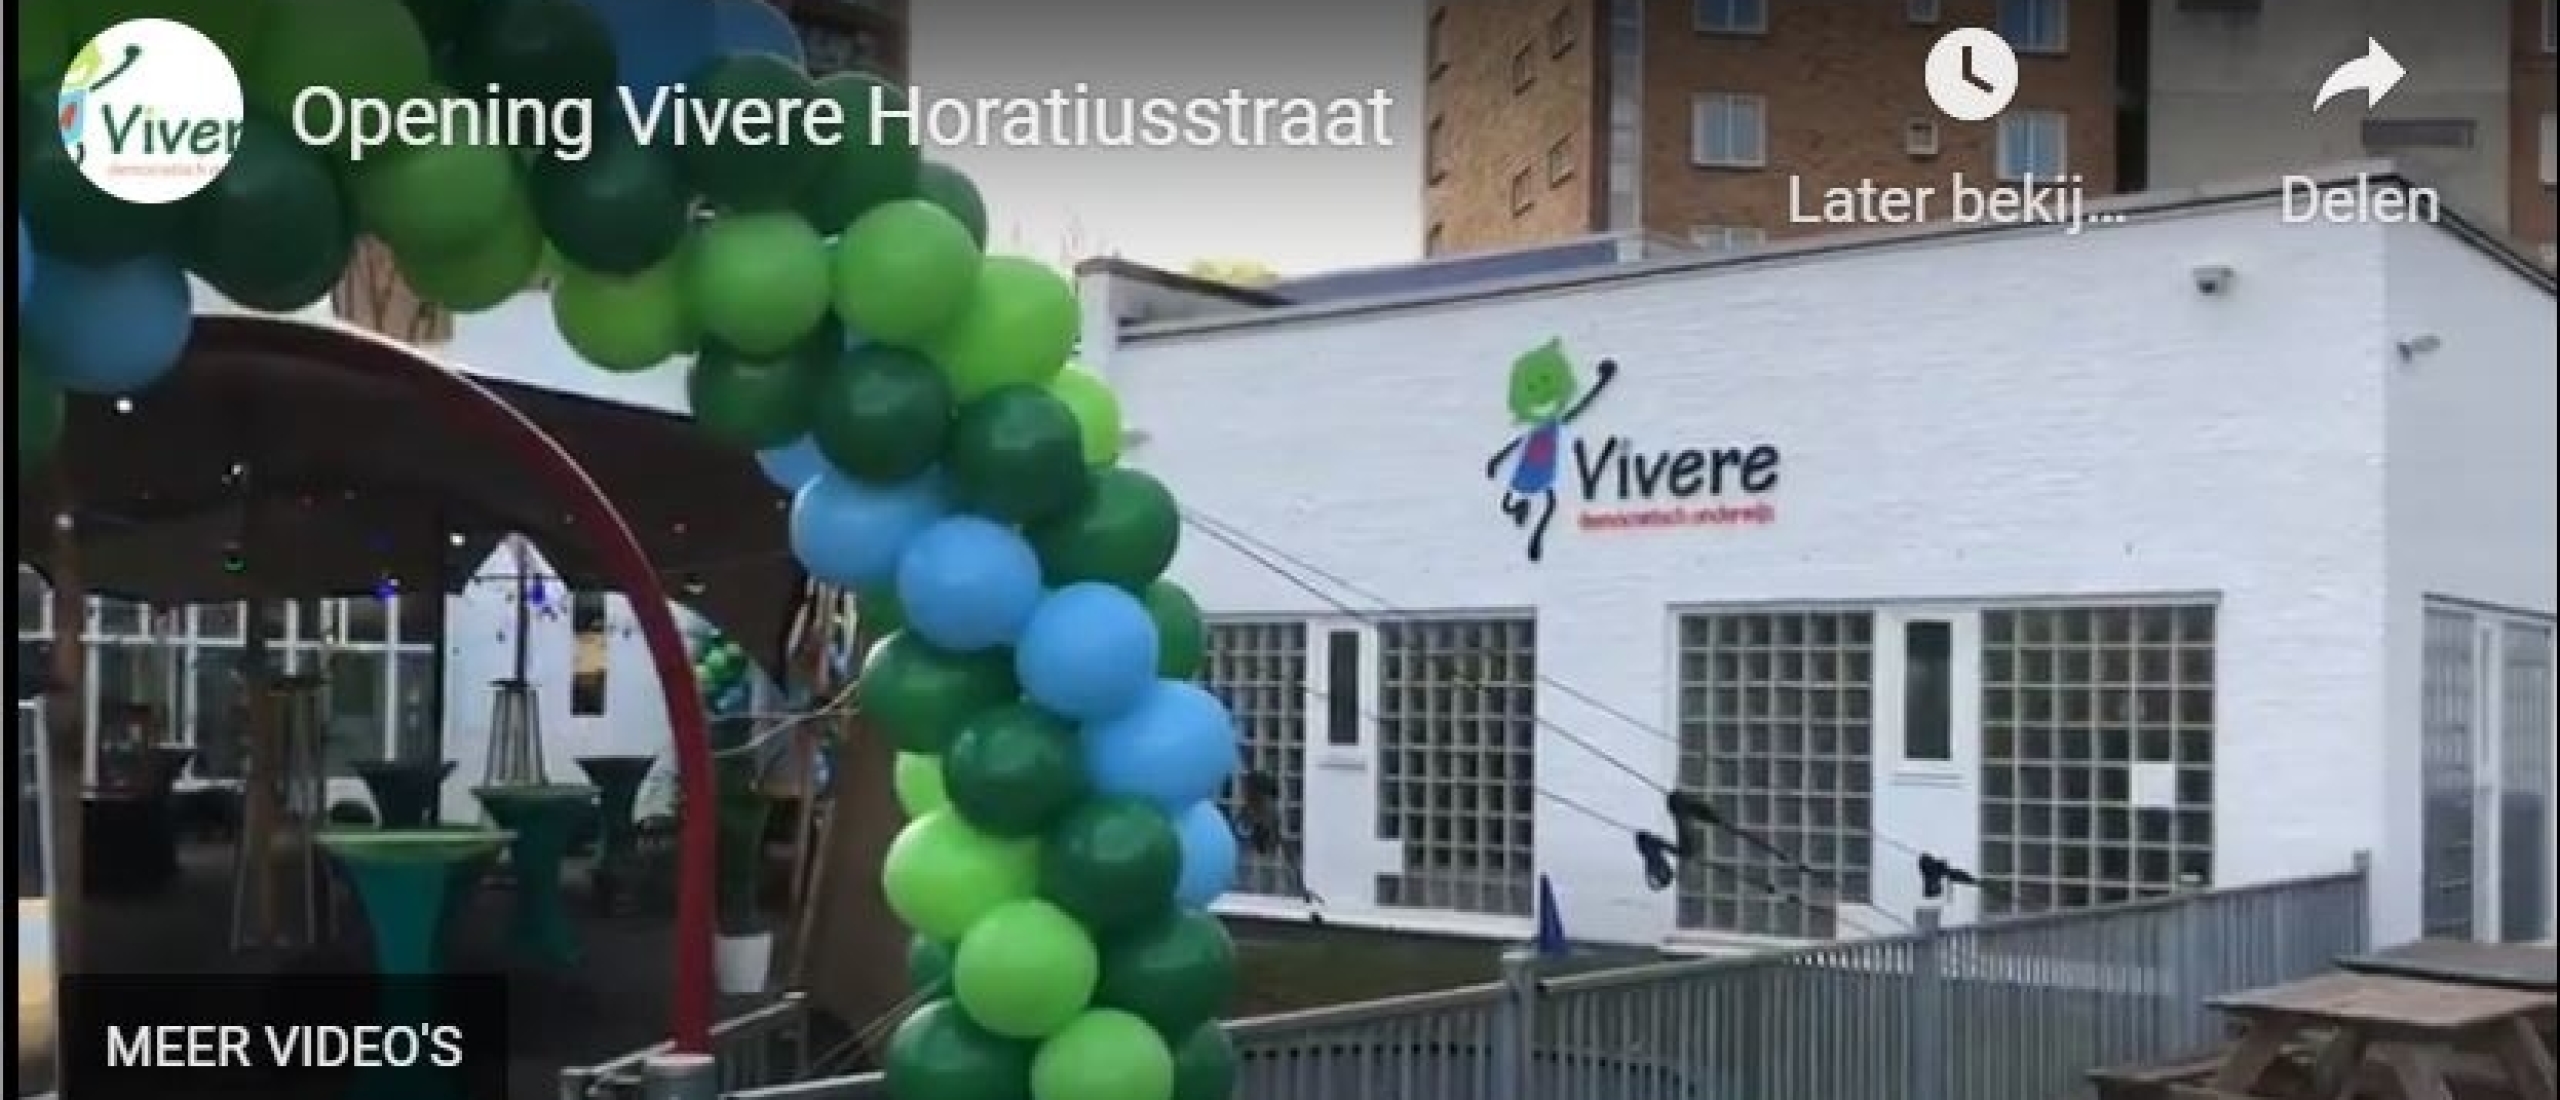 Opening Vivere Horatiusstraat!